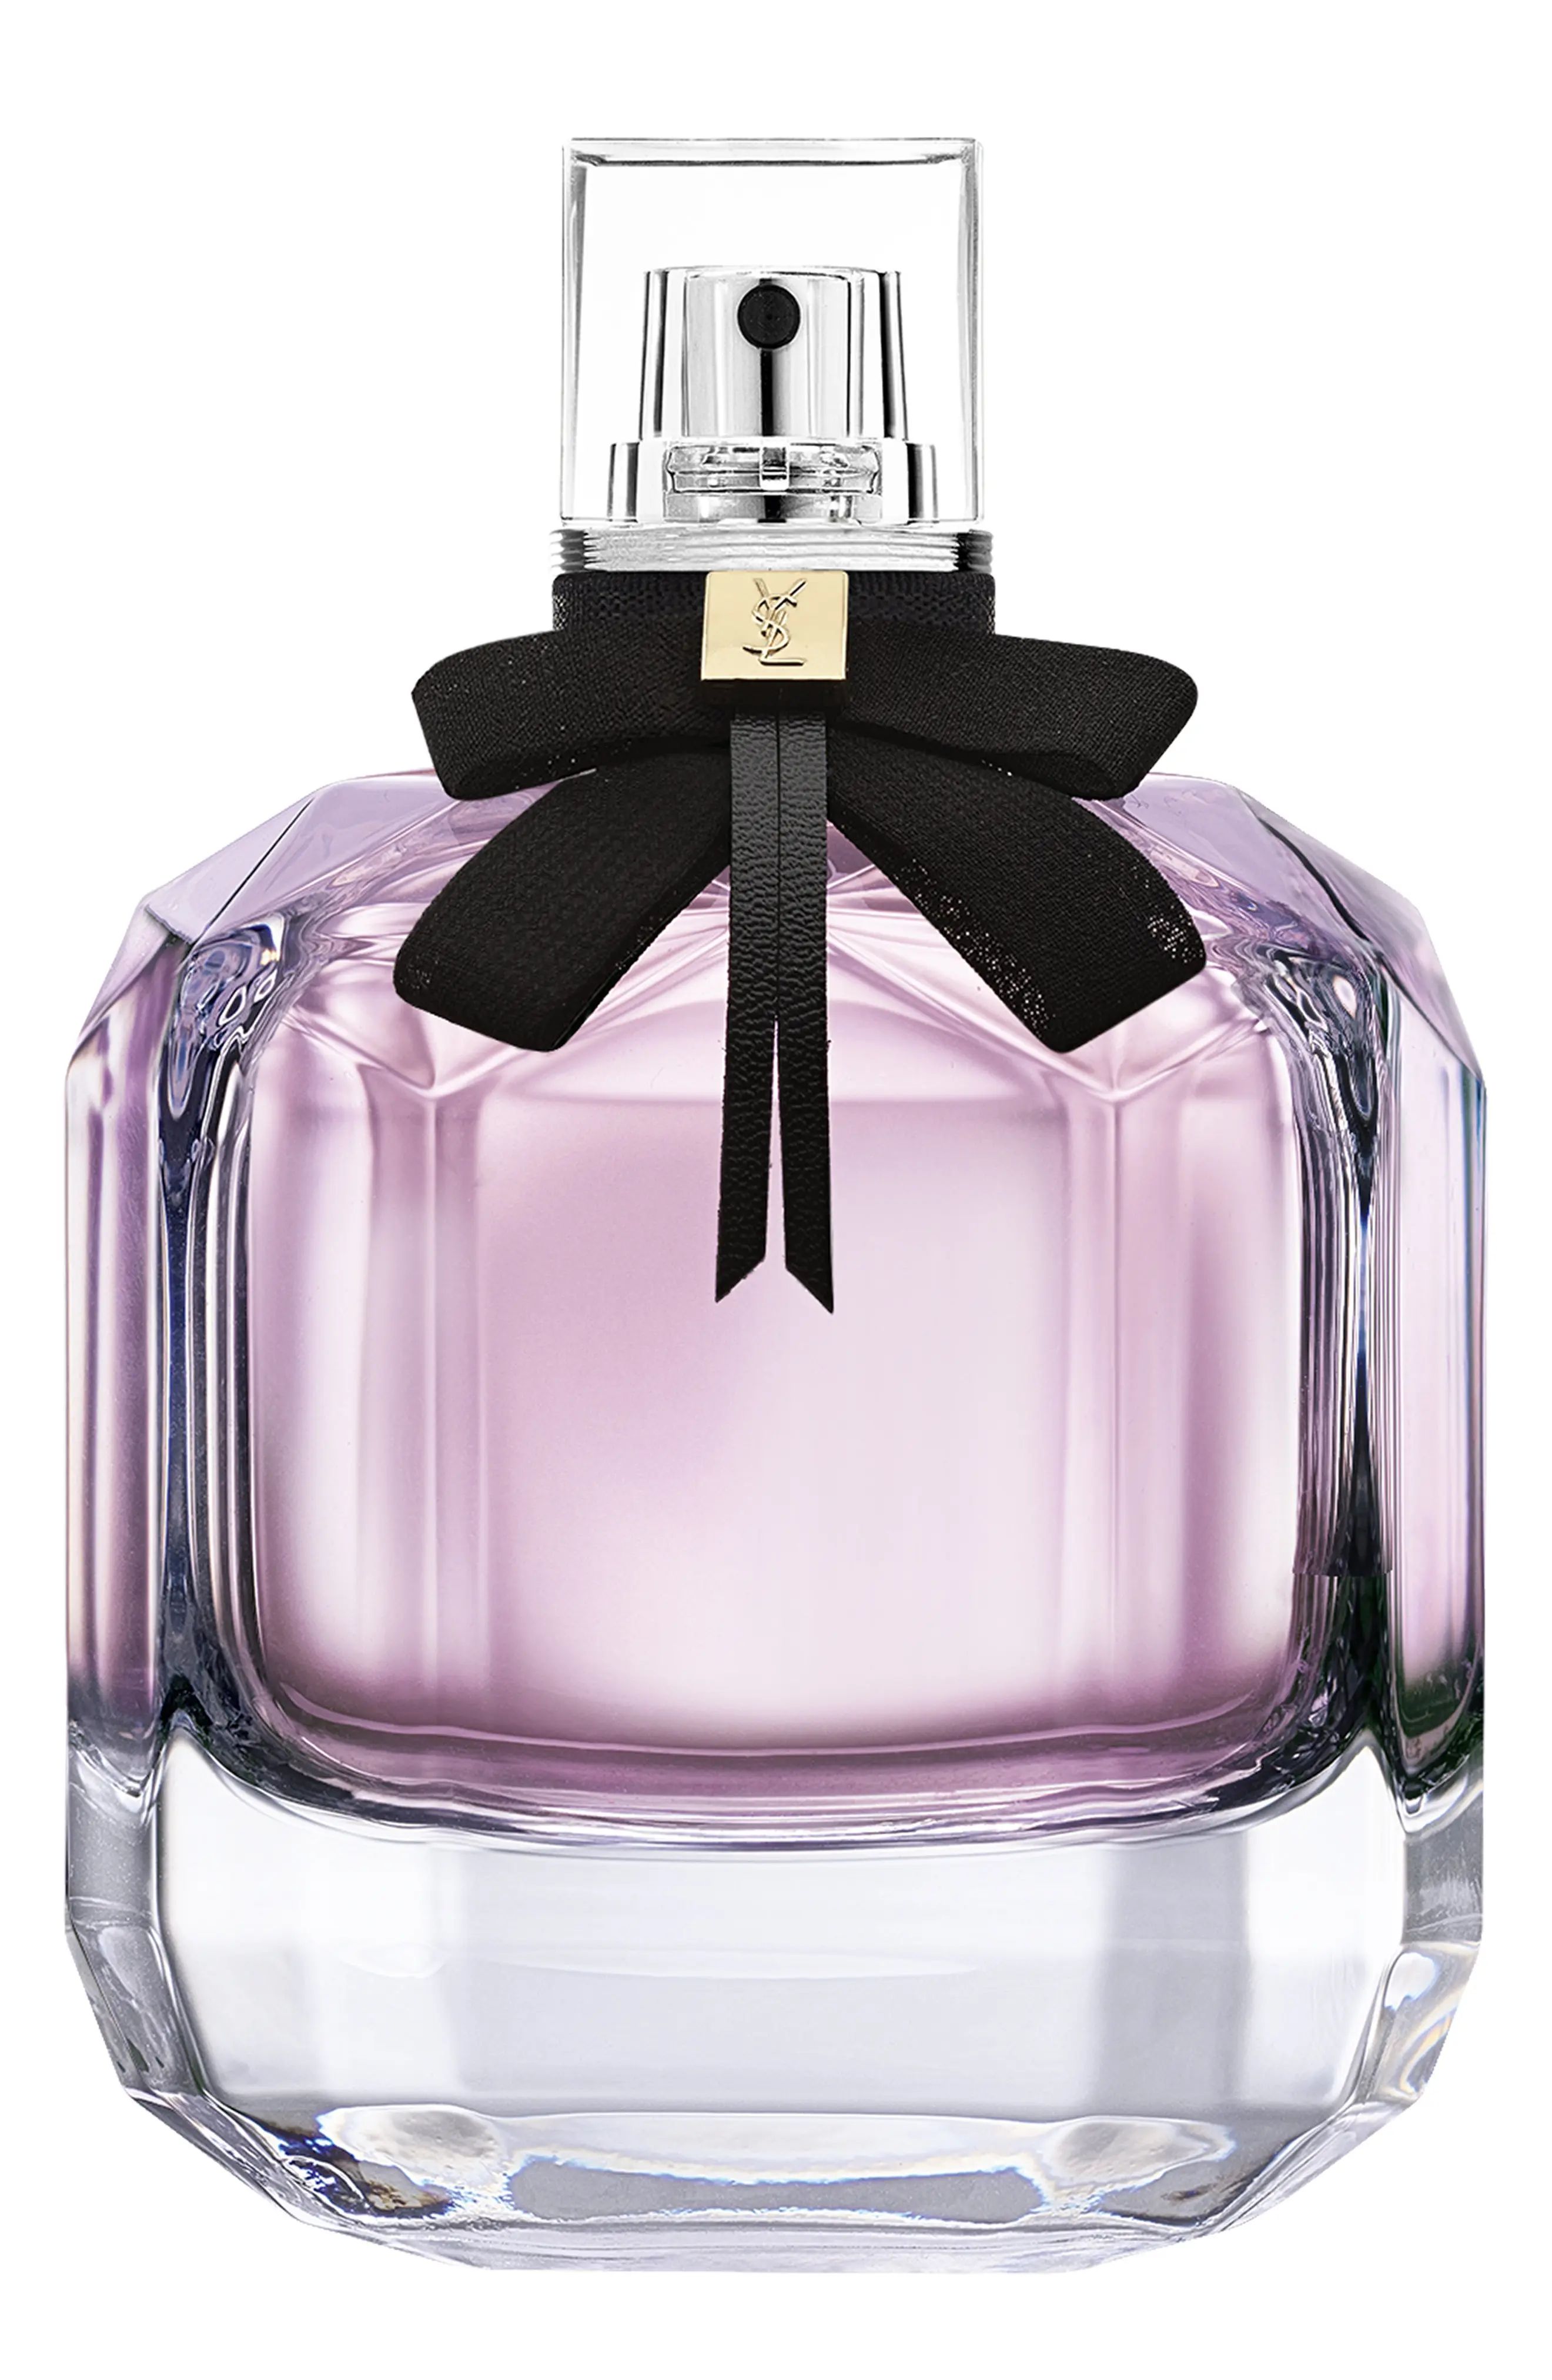 Yves Saint Laurent Mon Paris Eau de Parfum Fragrance, Size 3 Oz at Nordstrom | Nordstrom